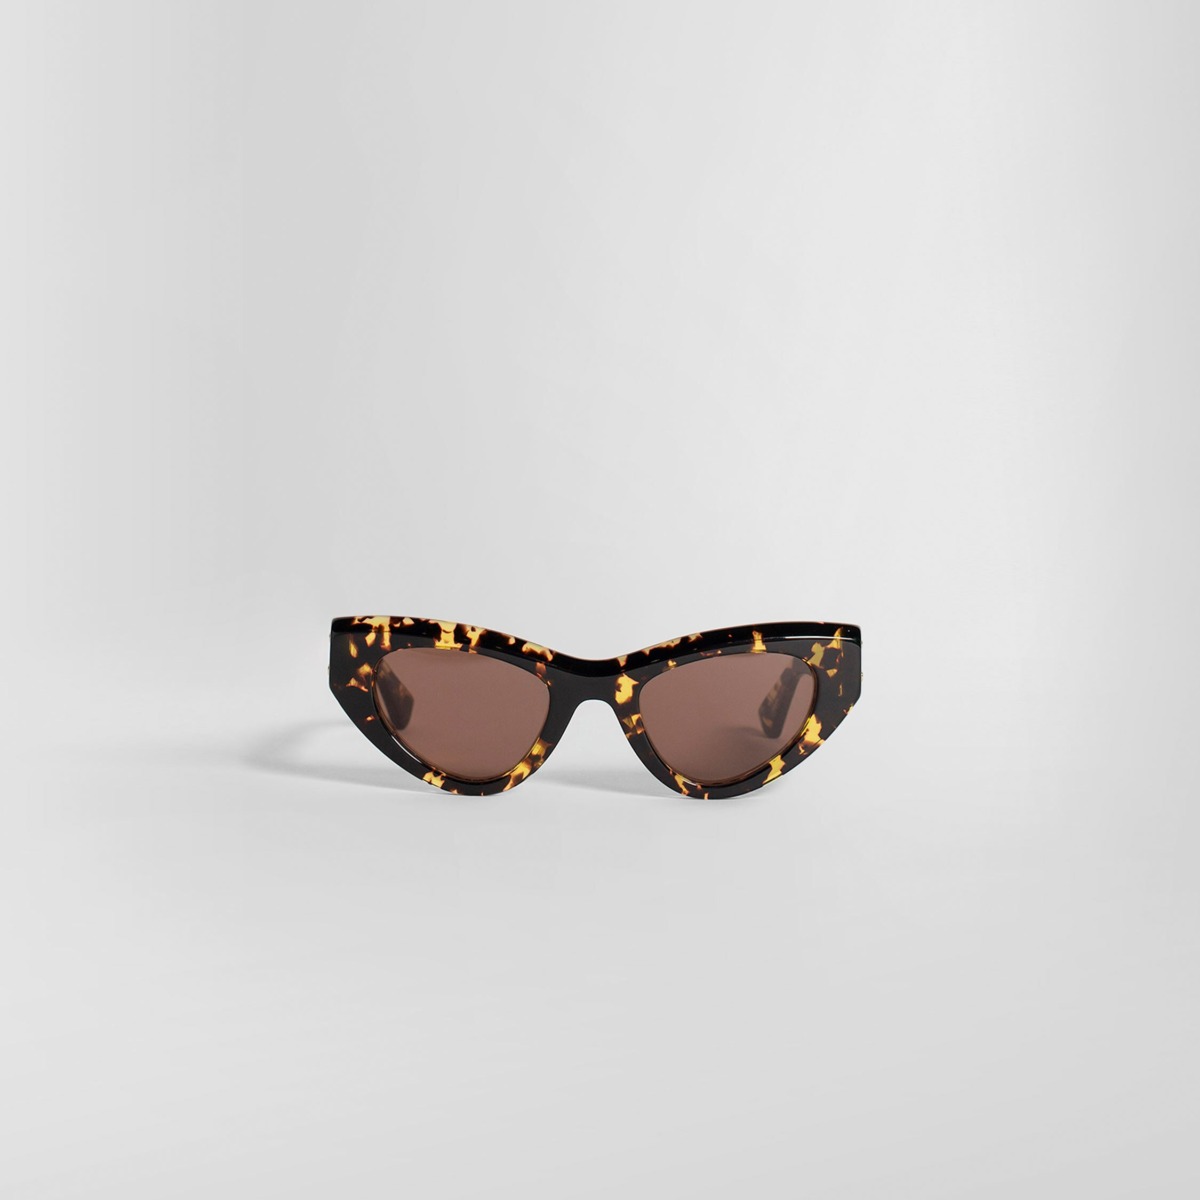 Bottega Veneta - Men Sunglasses Brown by Antonioli GOOFASH